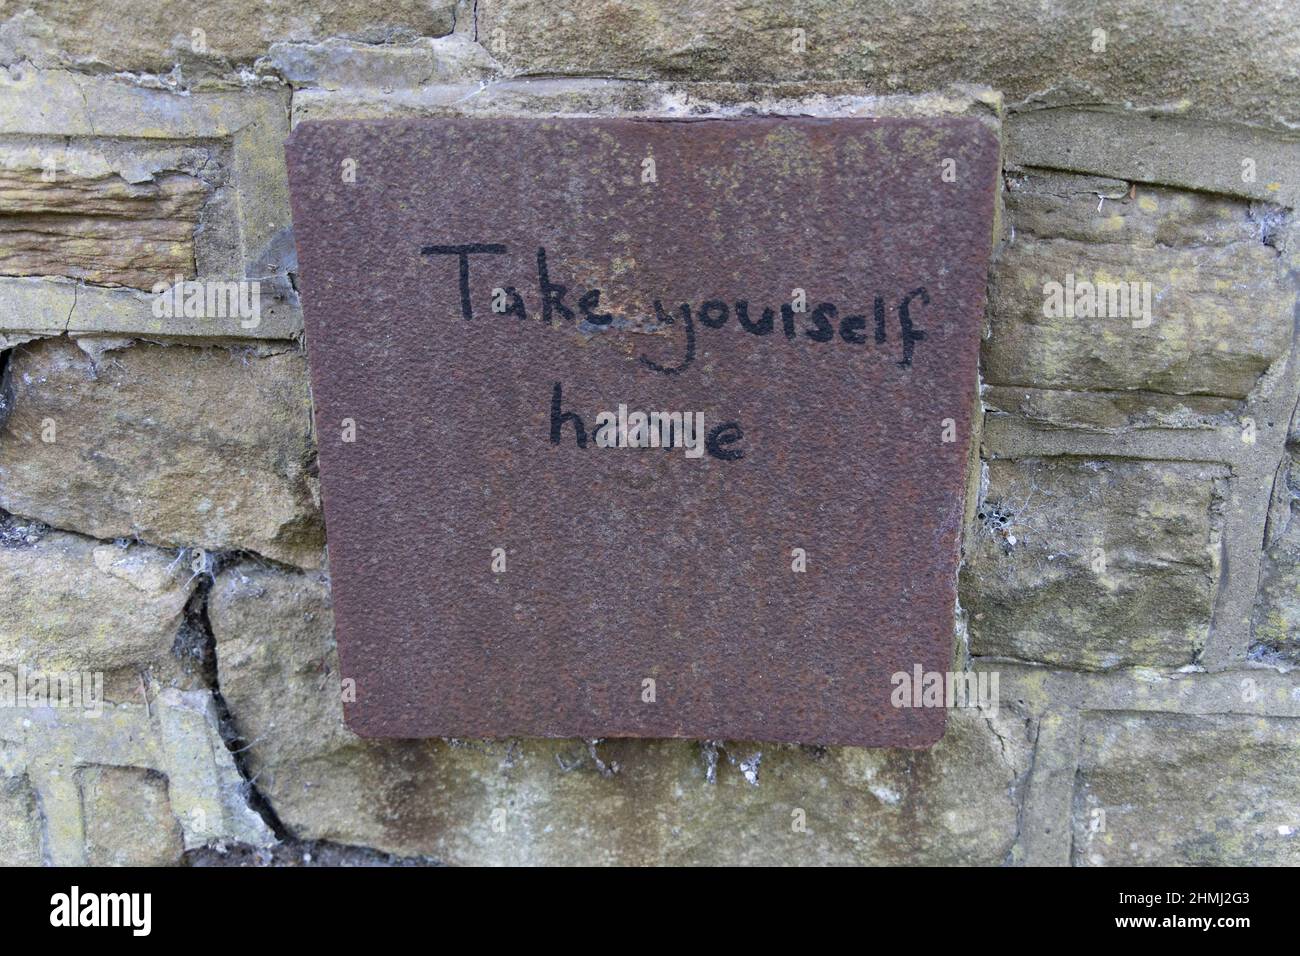 Un pezzo stravagante di graffiti recita, "Take Yourself Home", su una piastra metallica arrugginita posta in un muro a Jesmond, Newcastle upon Tyne, Regno Unito. Foto Stock